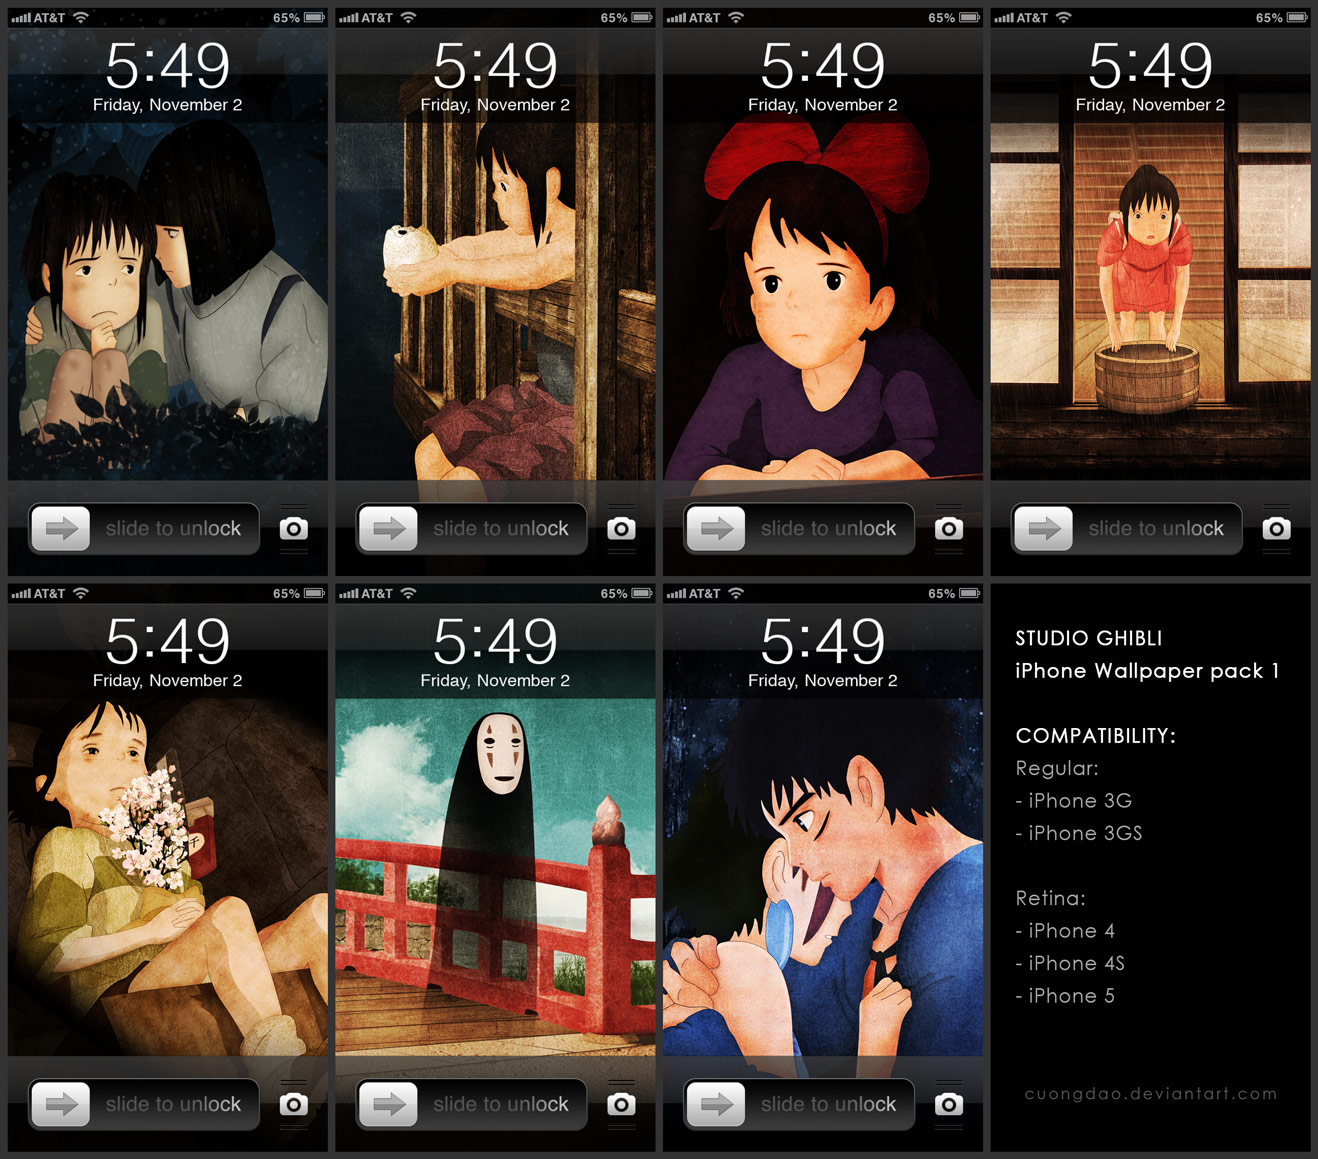  Paintings Studio Ghibli iPhone Wallpaper pack 1 by artist cuongdao